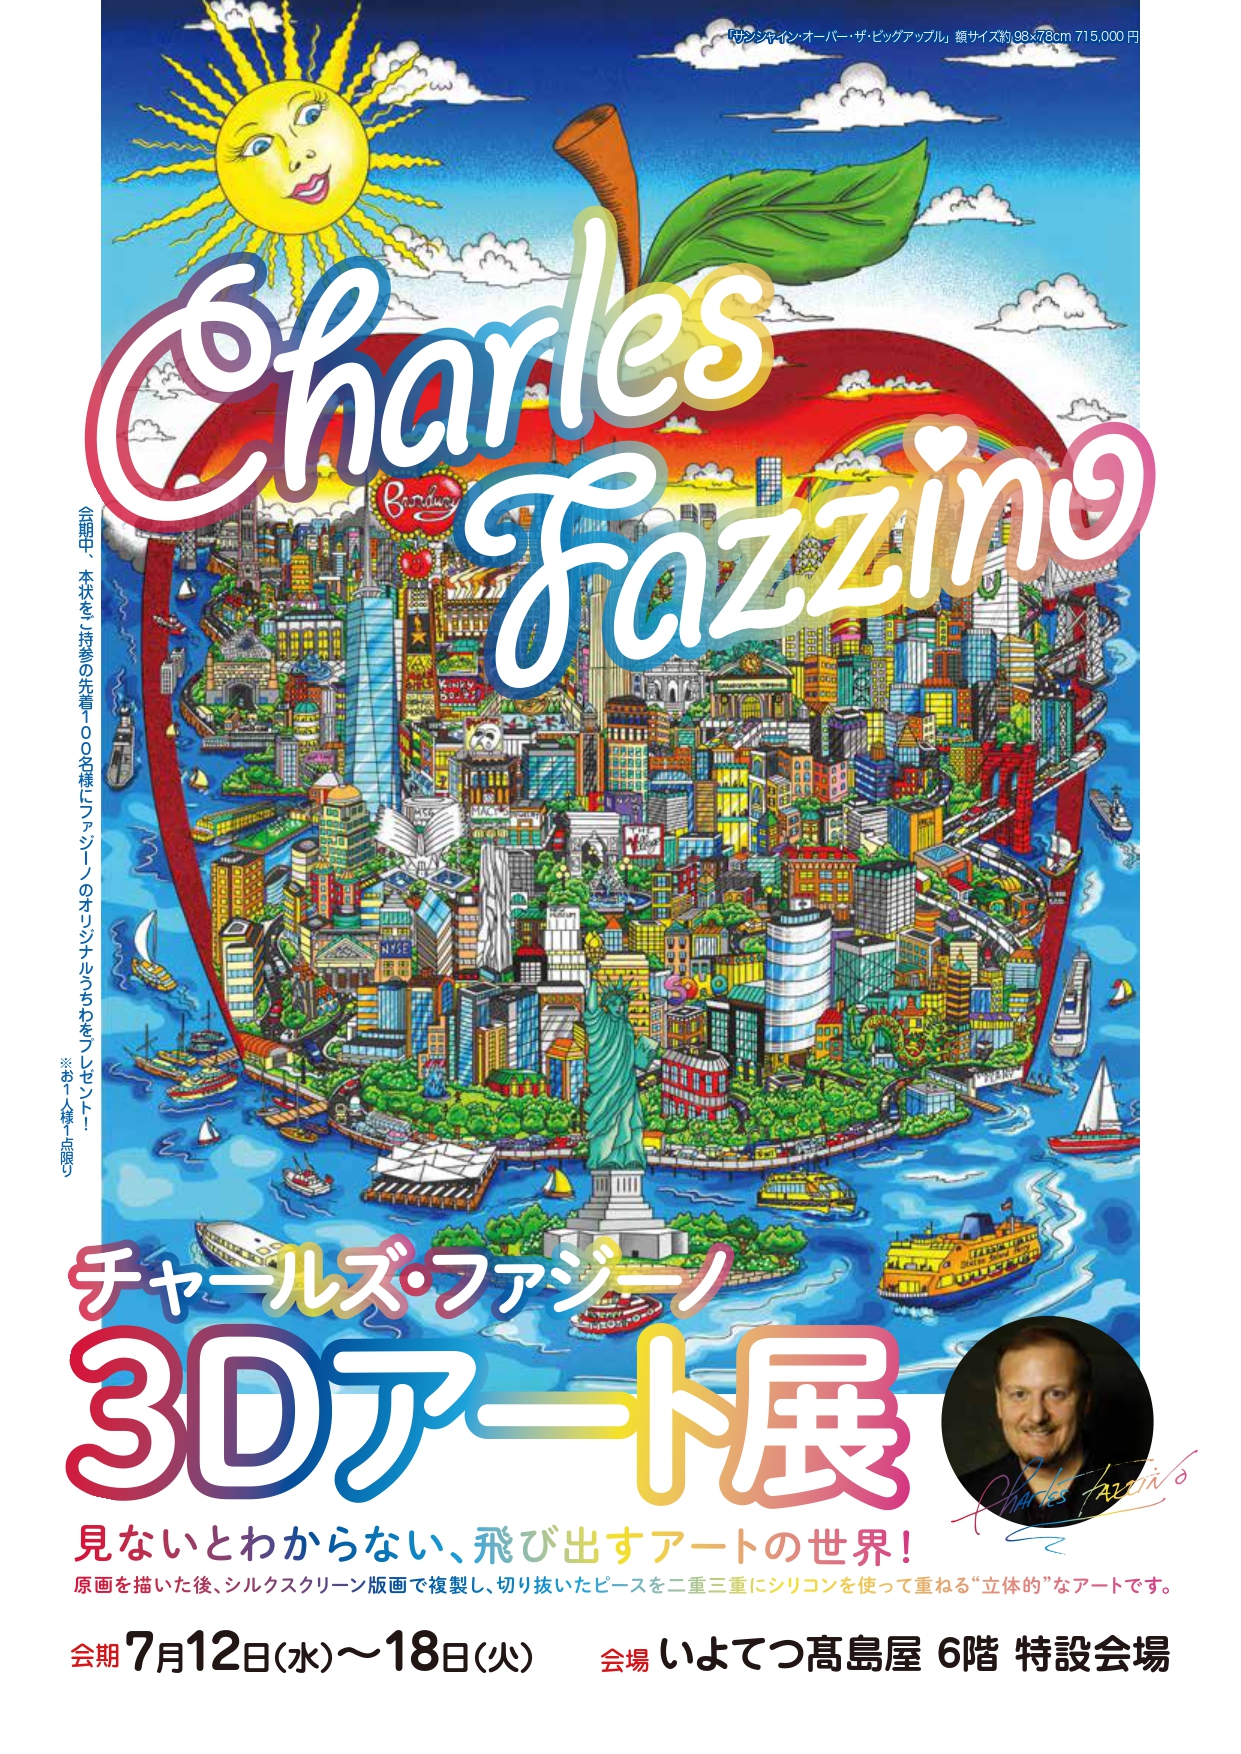 チャールズ・ファジーノ 3Dアート展」いよてつ高島屋で開催のお知らせ